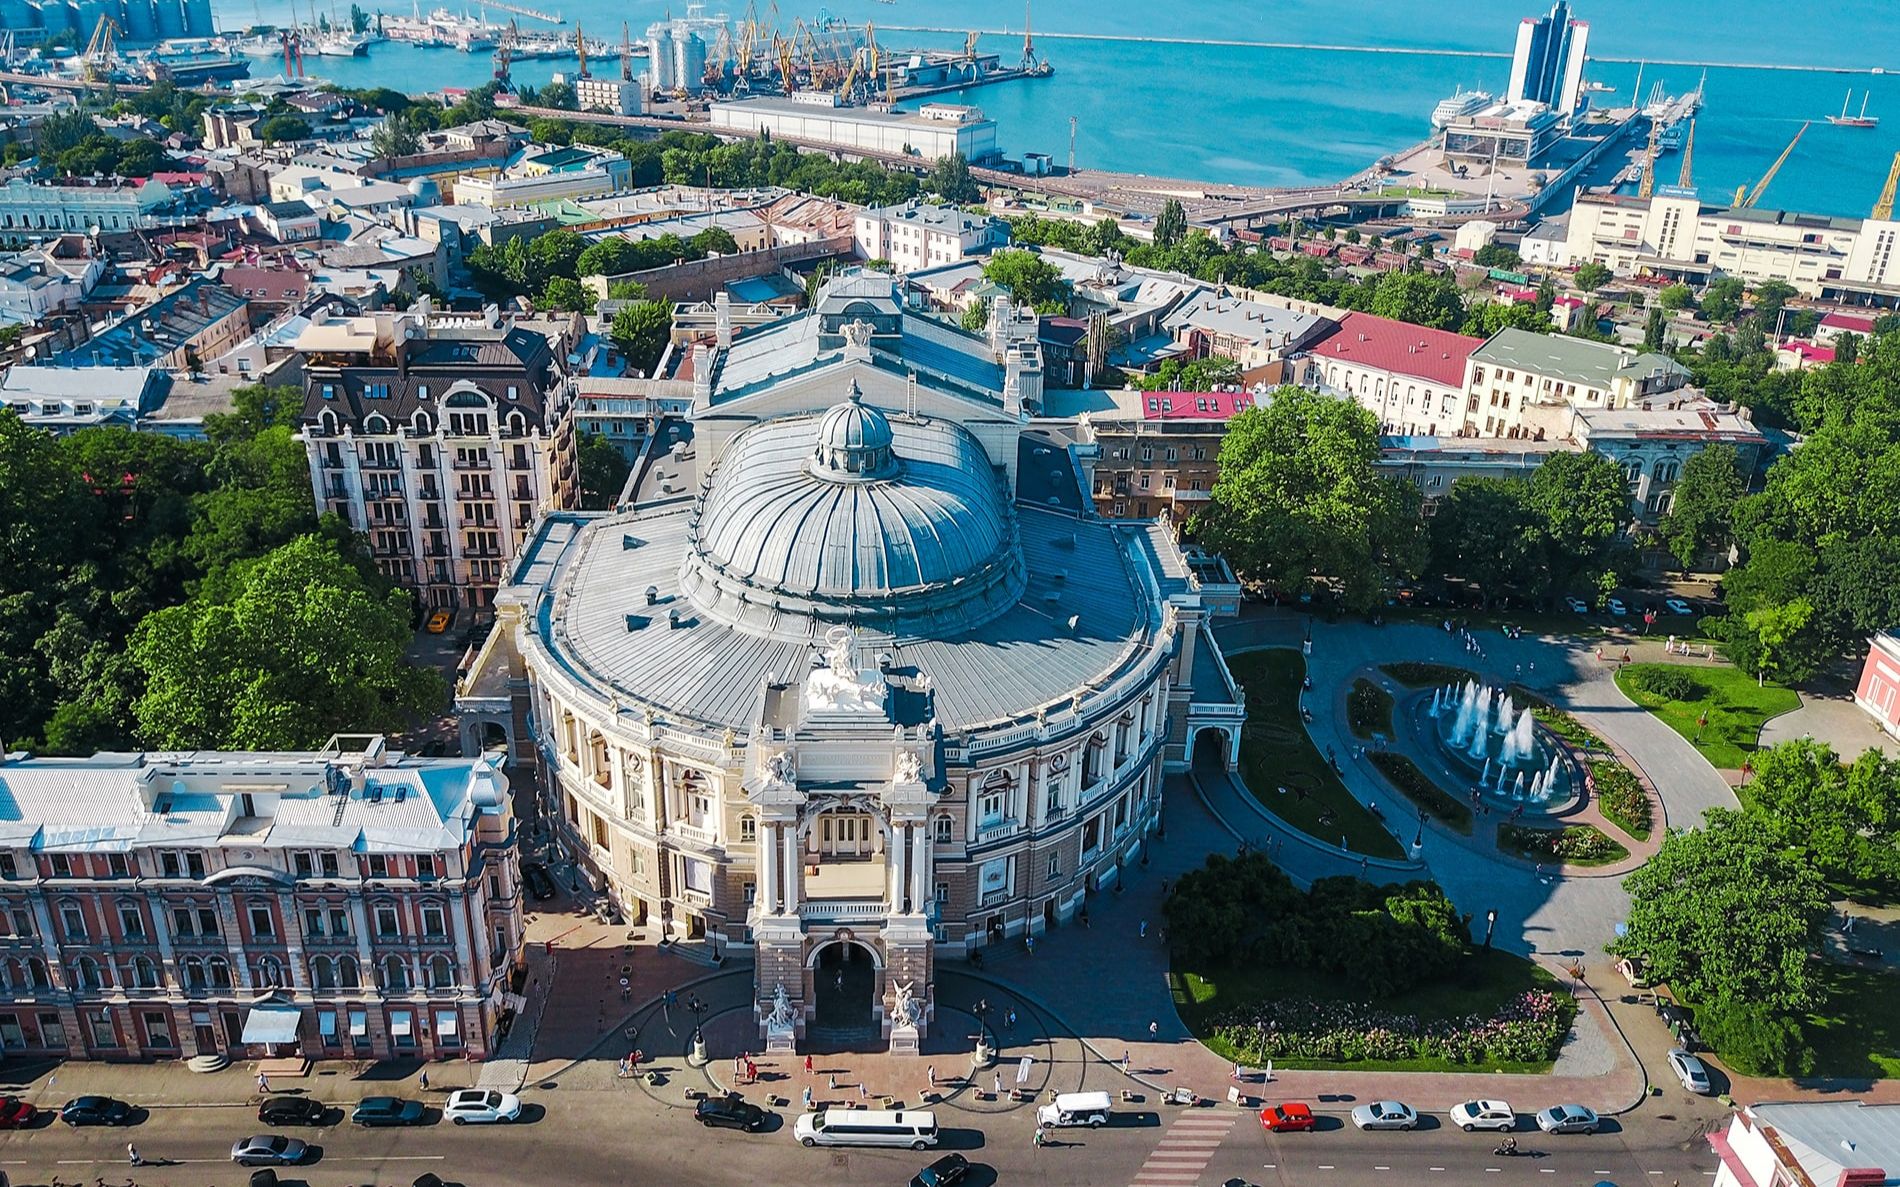 乌克兰港口城市图片